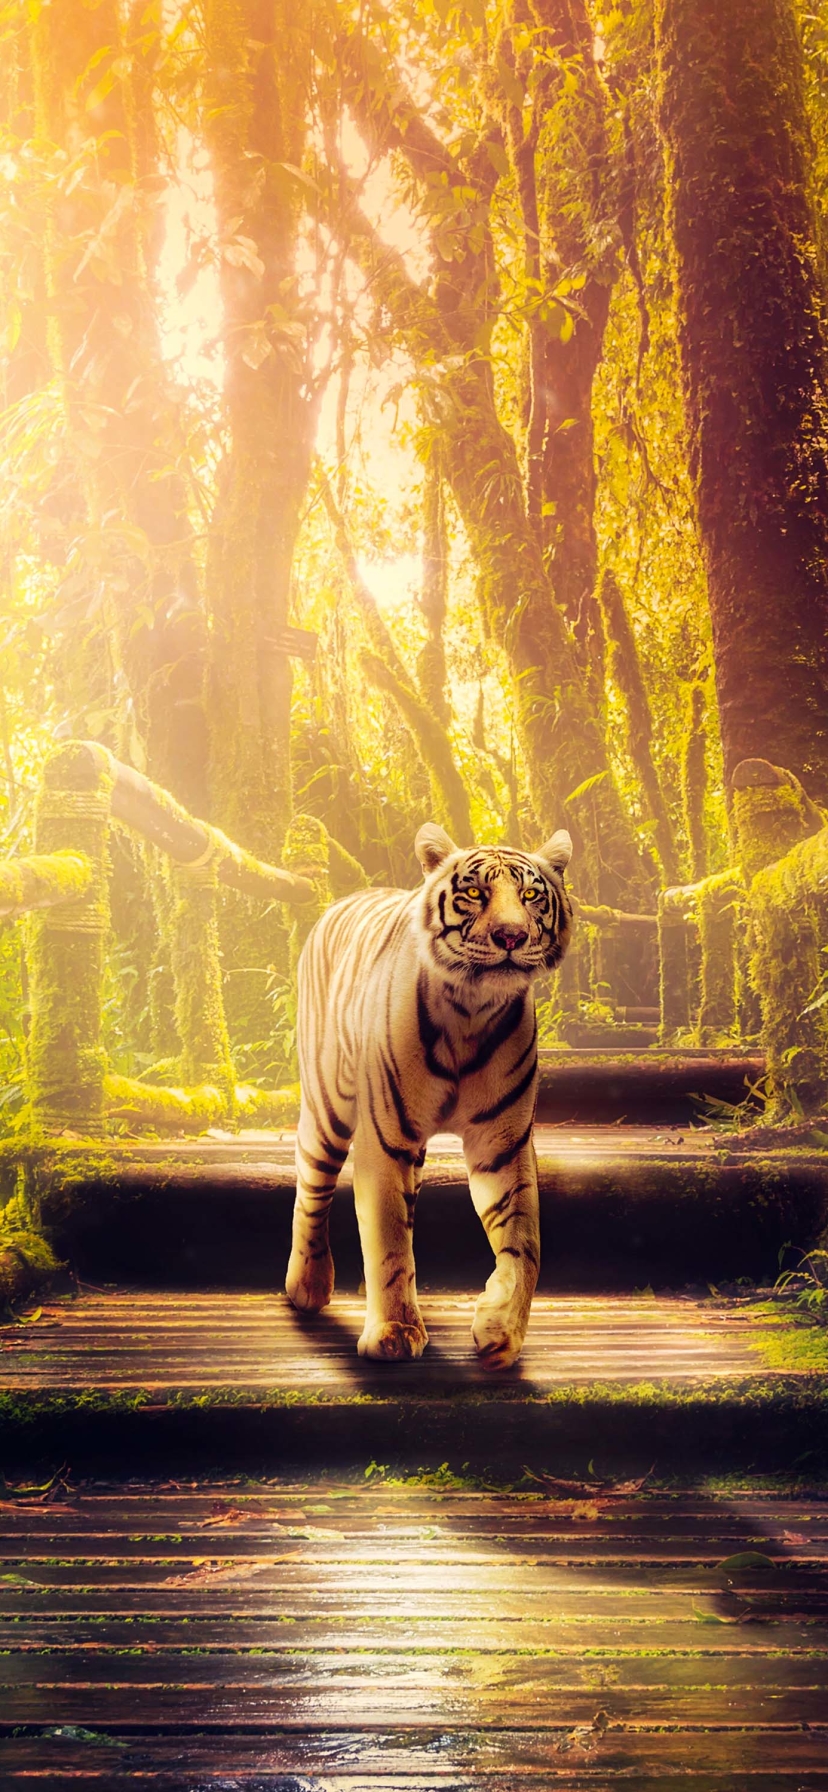 Descarga gratuita de fondo de pantalla para móvil de Animales, Gatos, Tigre, Selva.